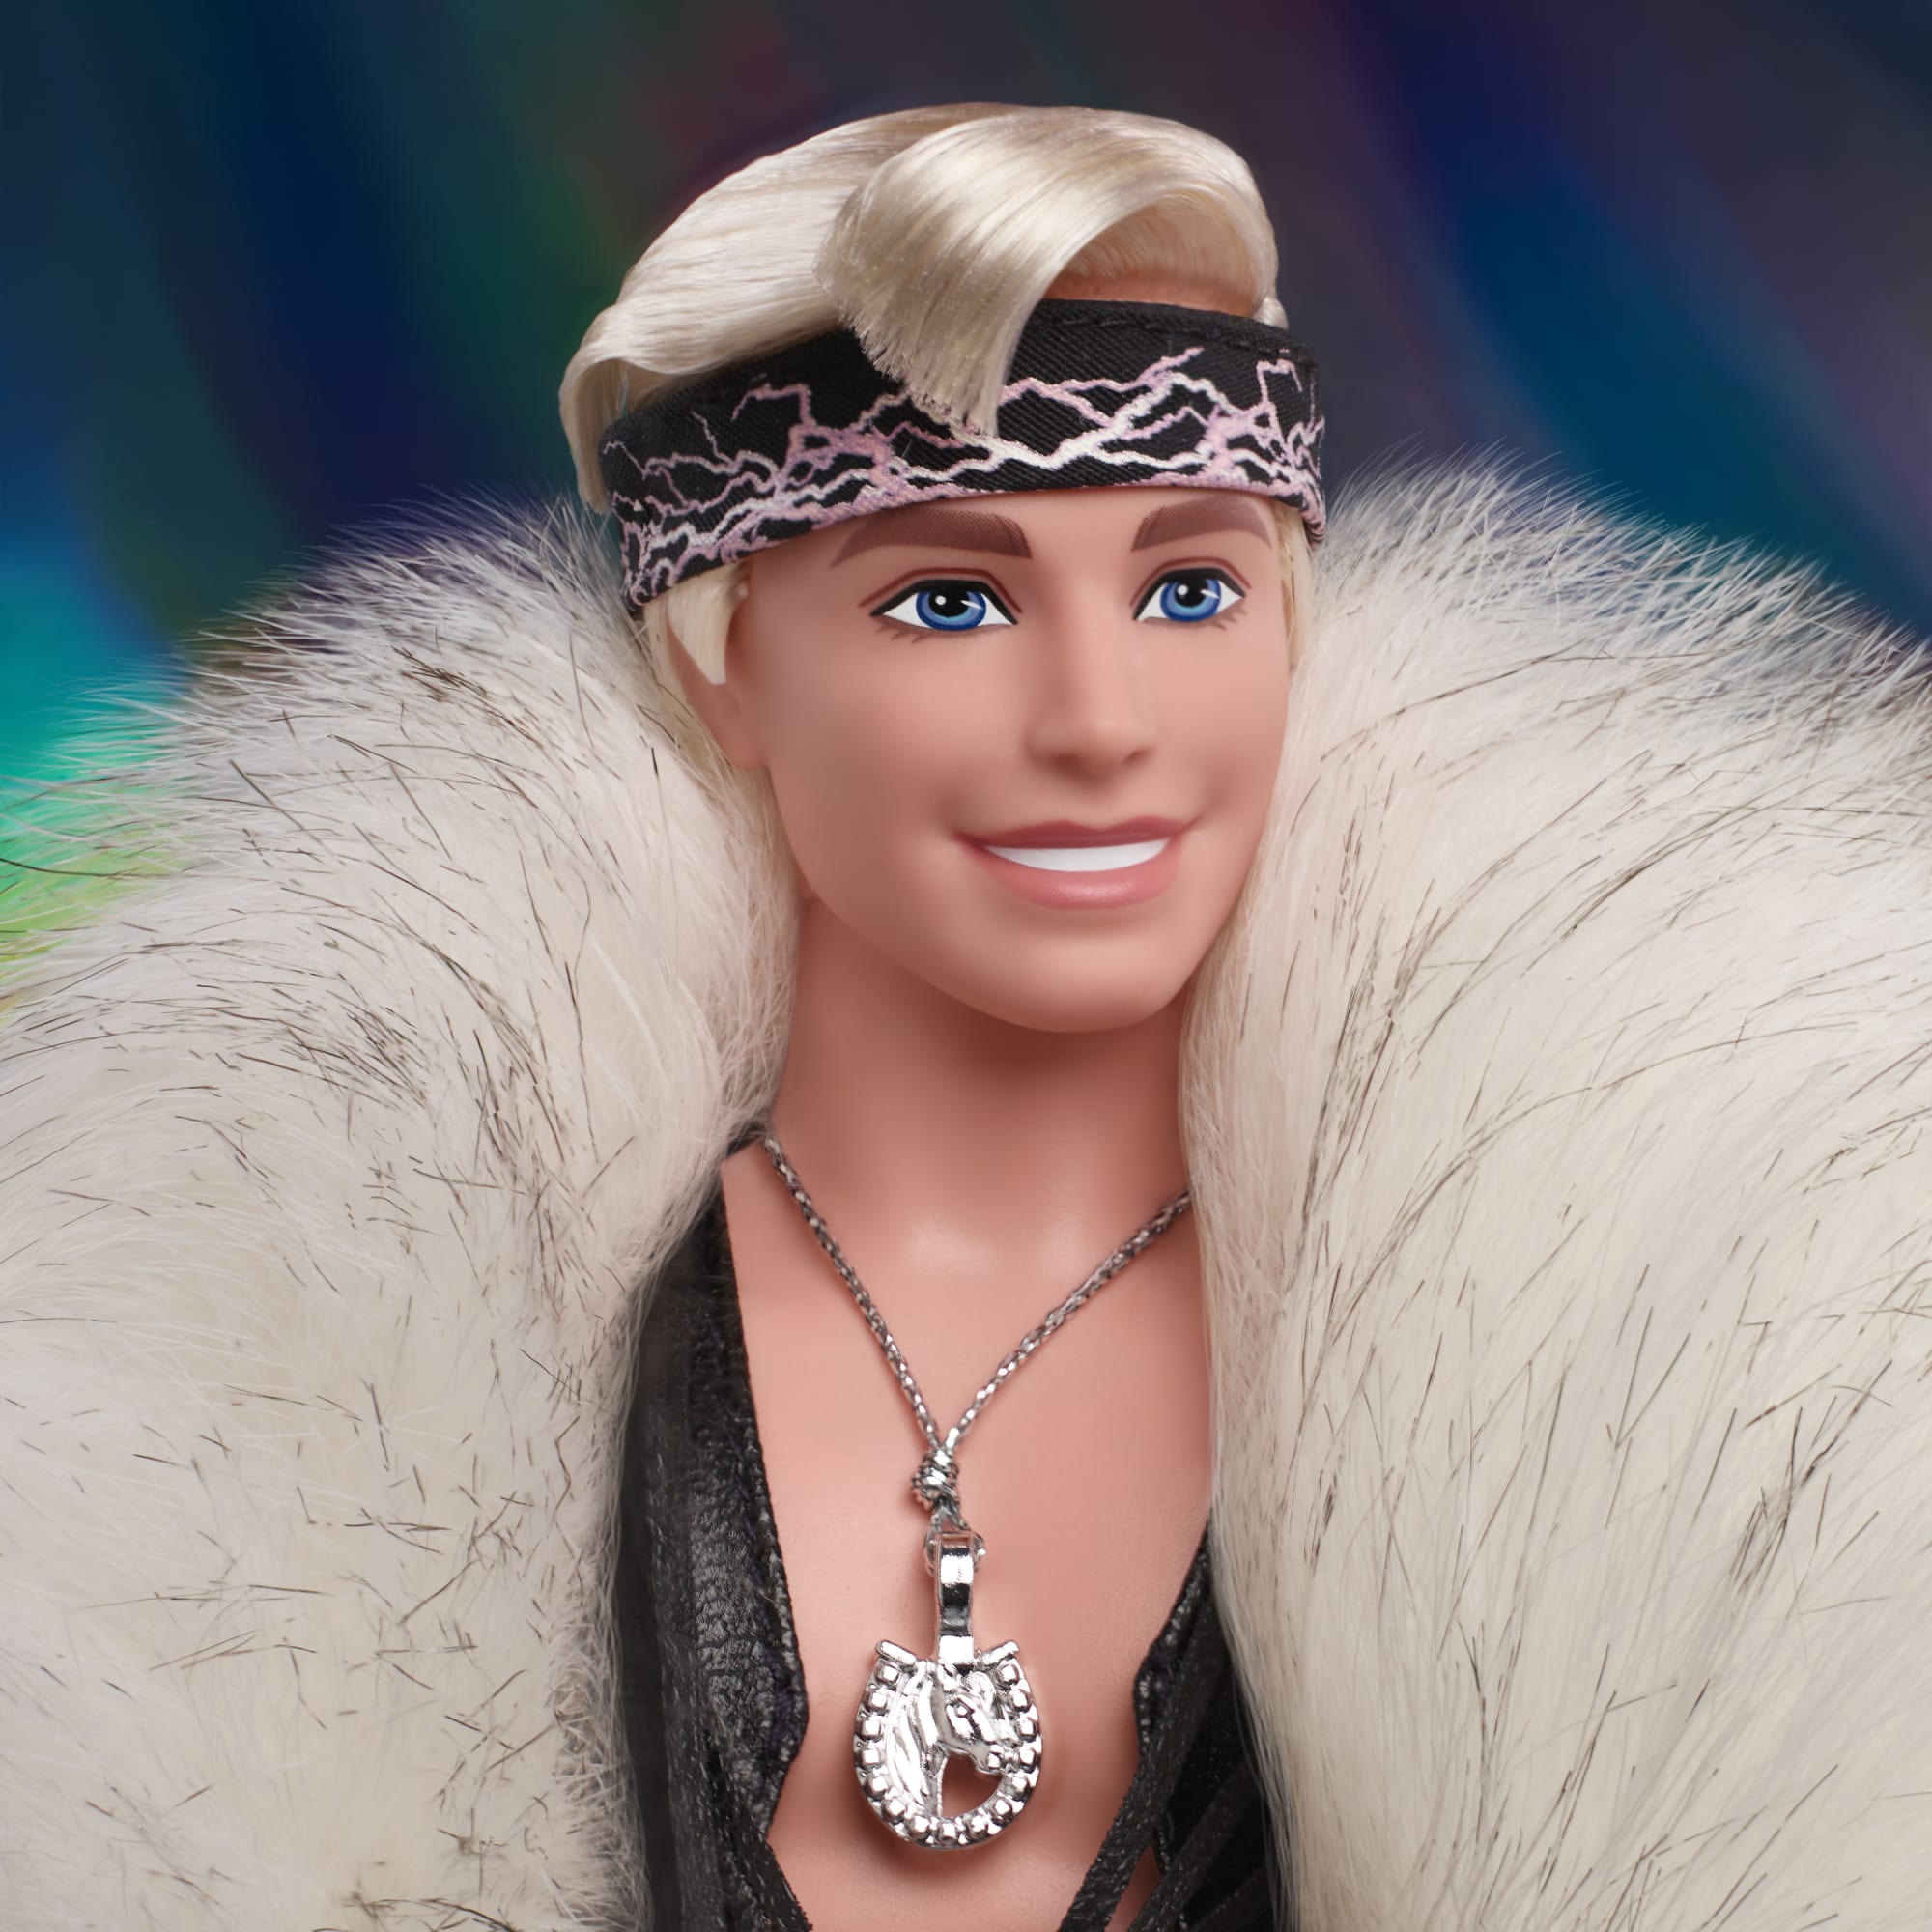 Collectible Barbie Movie Ken Doll, Faux Fur Coat